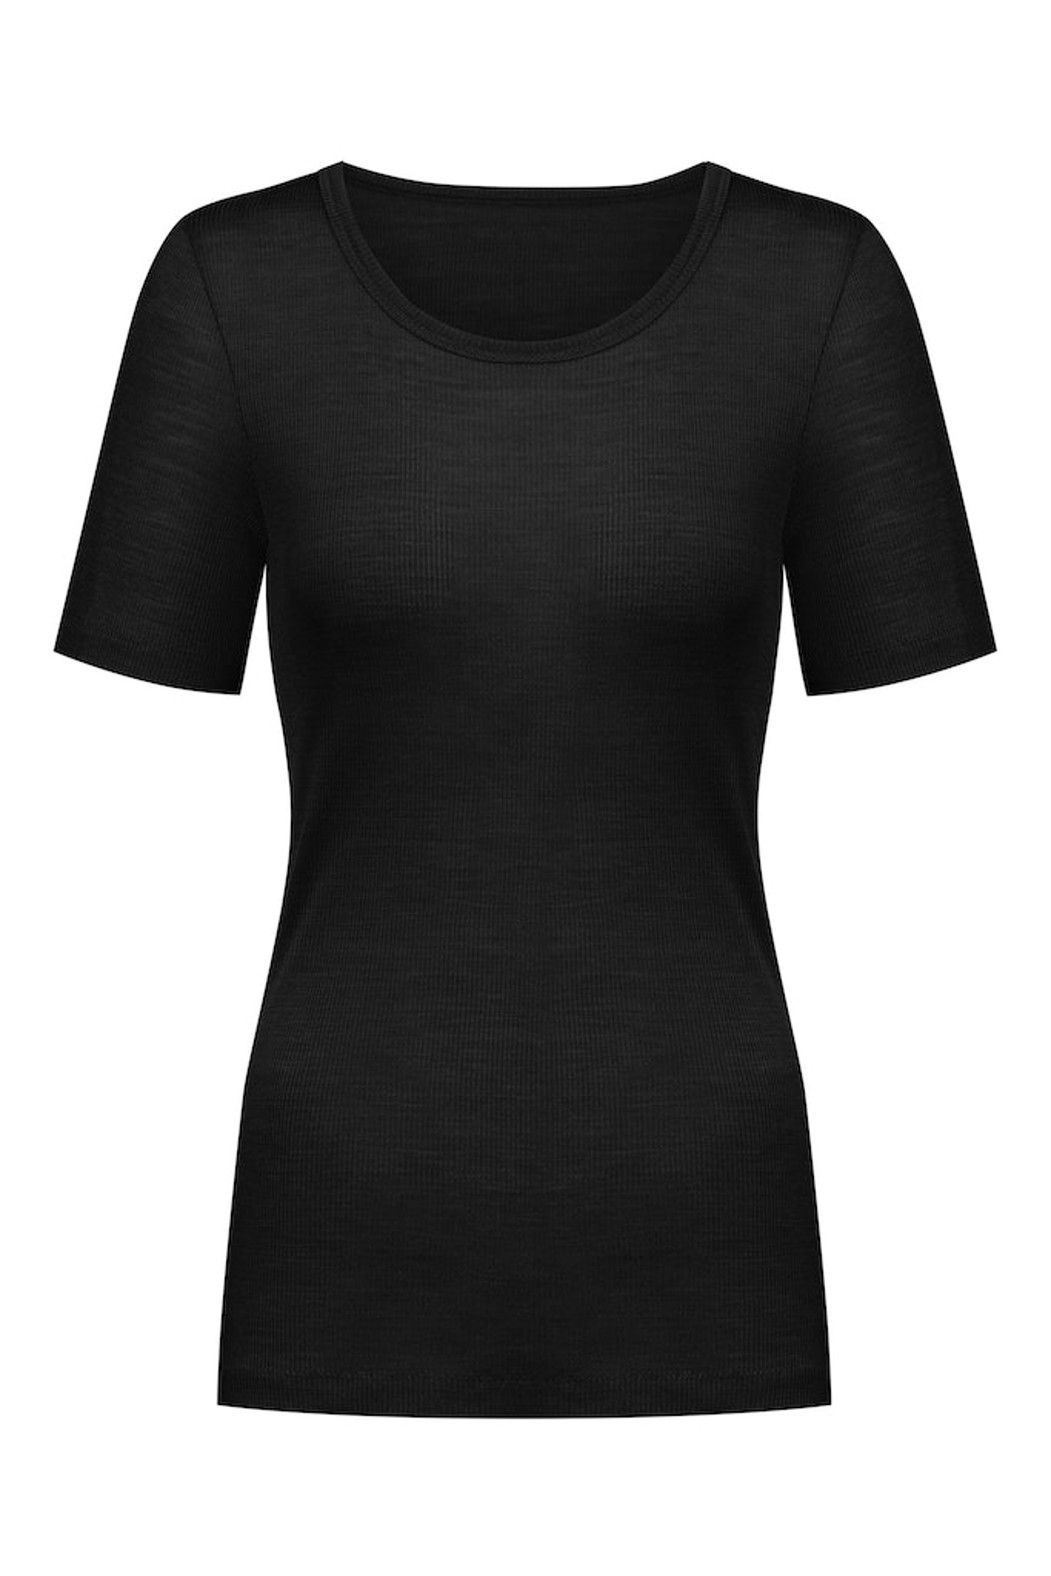 Mey Serie Wool Love Damen T-Shirt 1/2 Arm